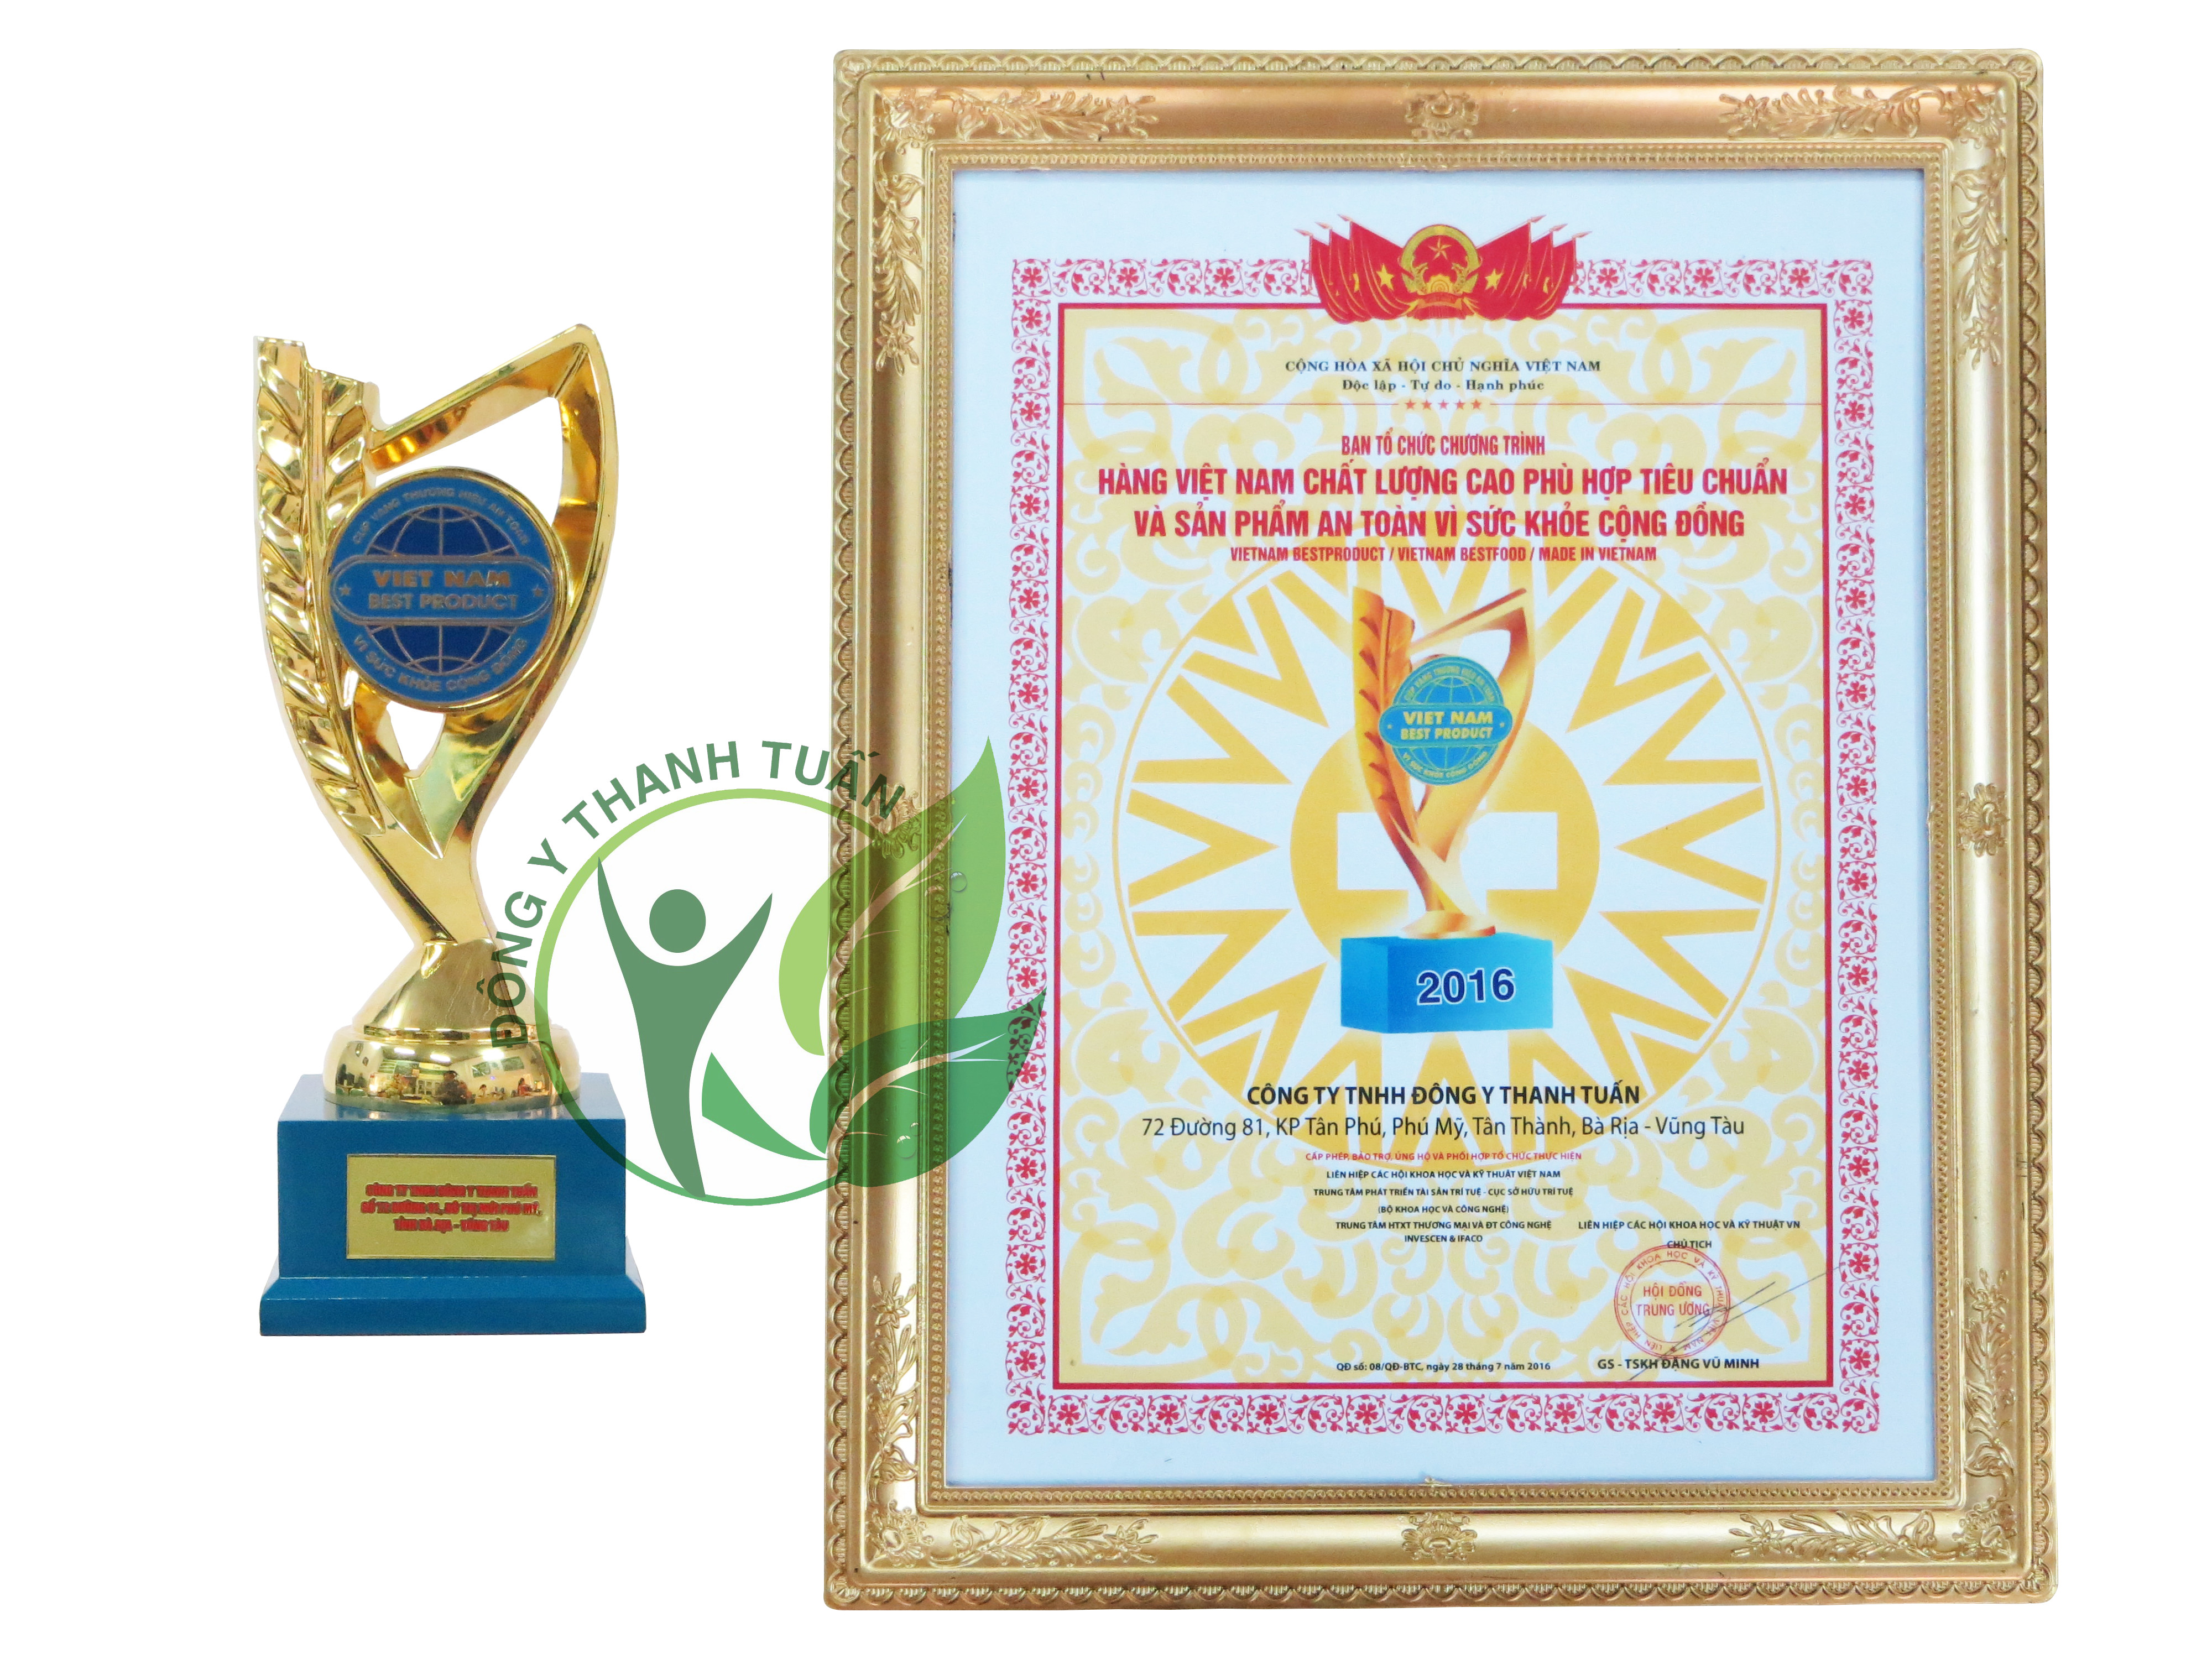 Dông y Thanh Tuấn nhận giải thưởng best product